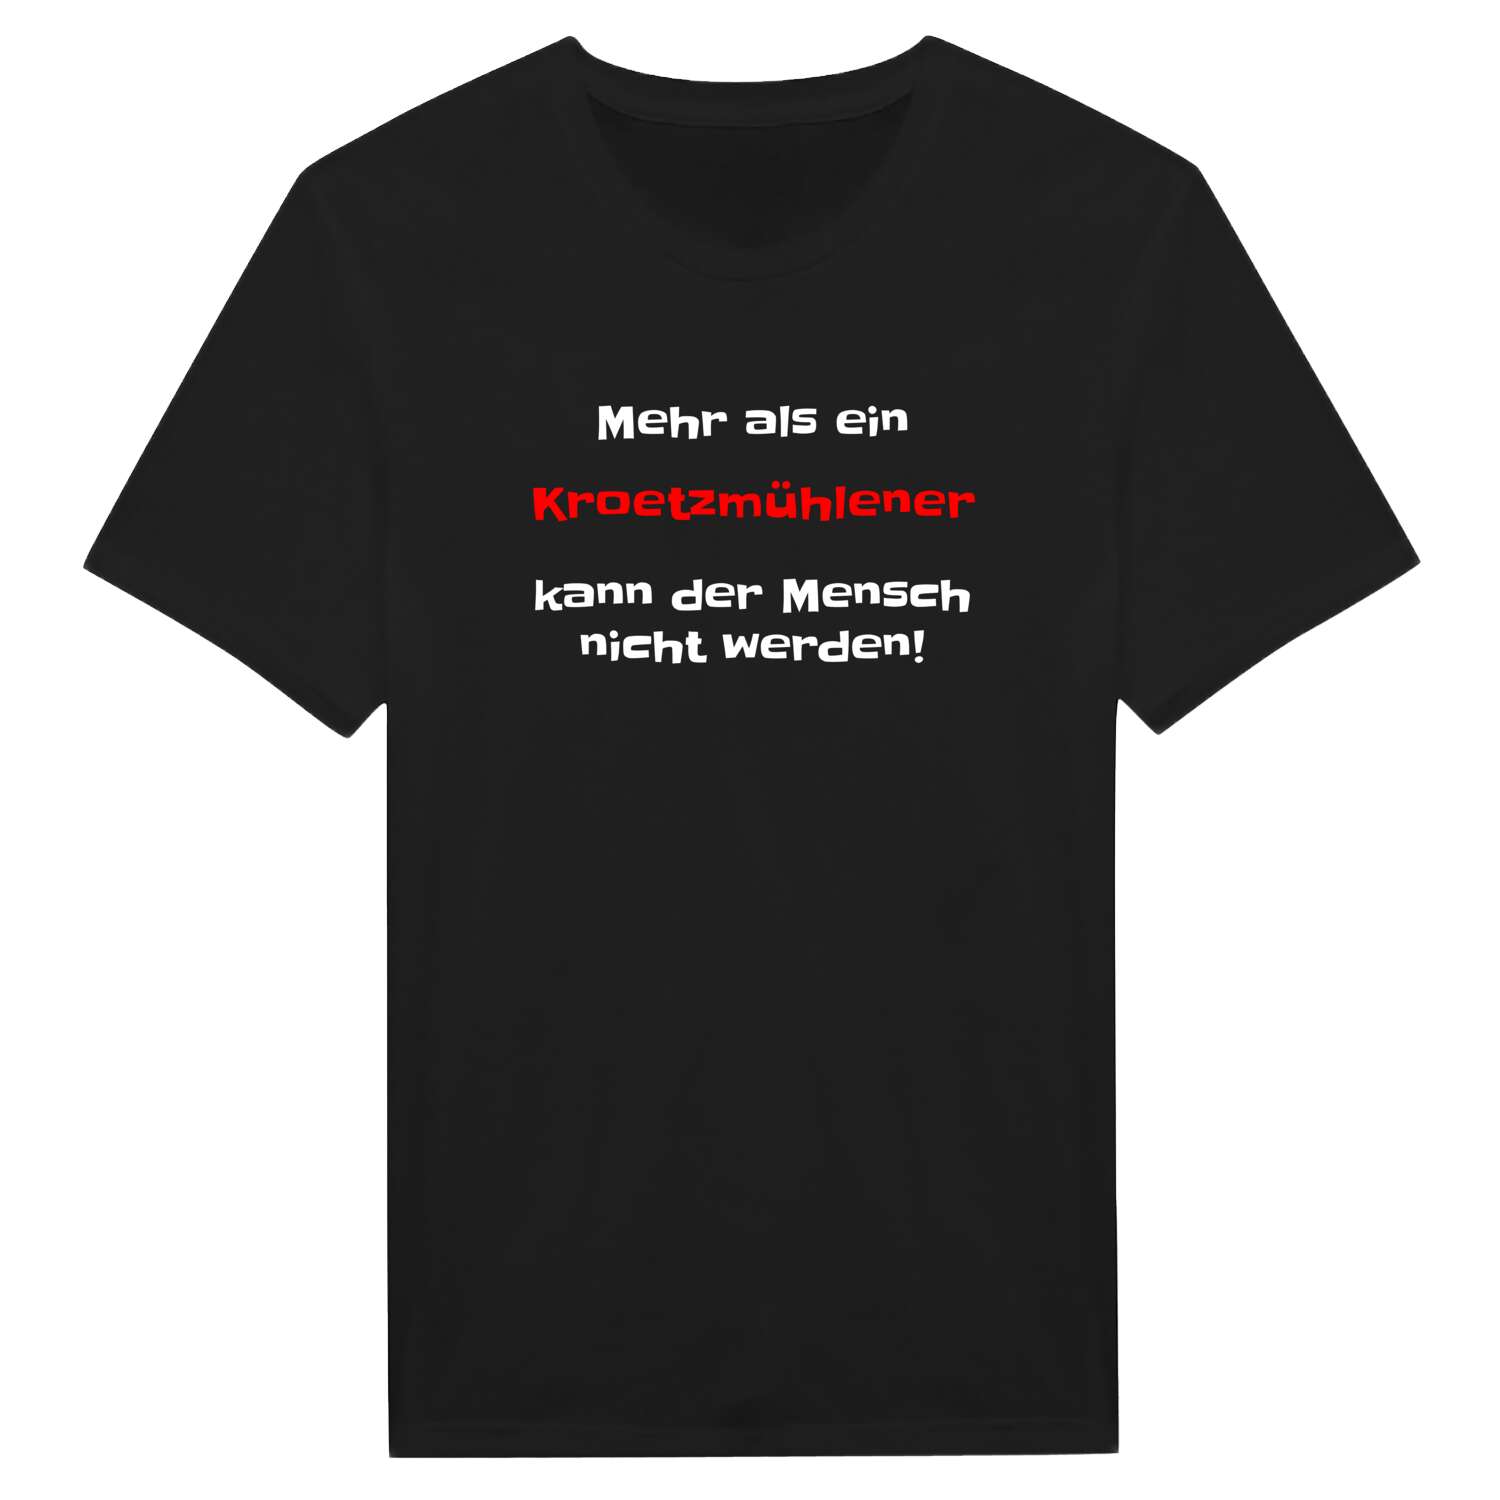 Kroetzmühle T-Shirt »Mehr als ein«